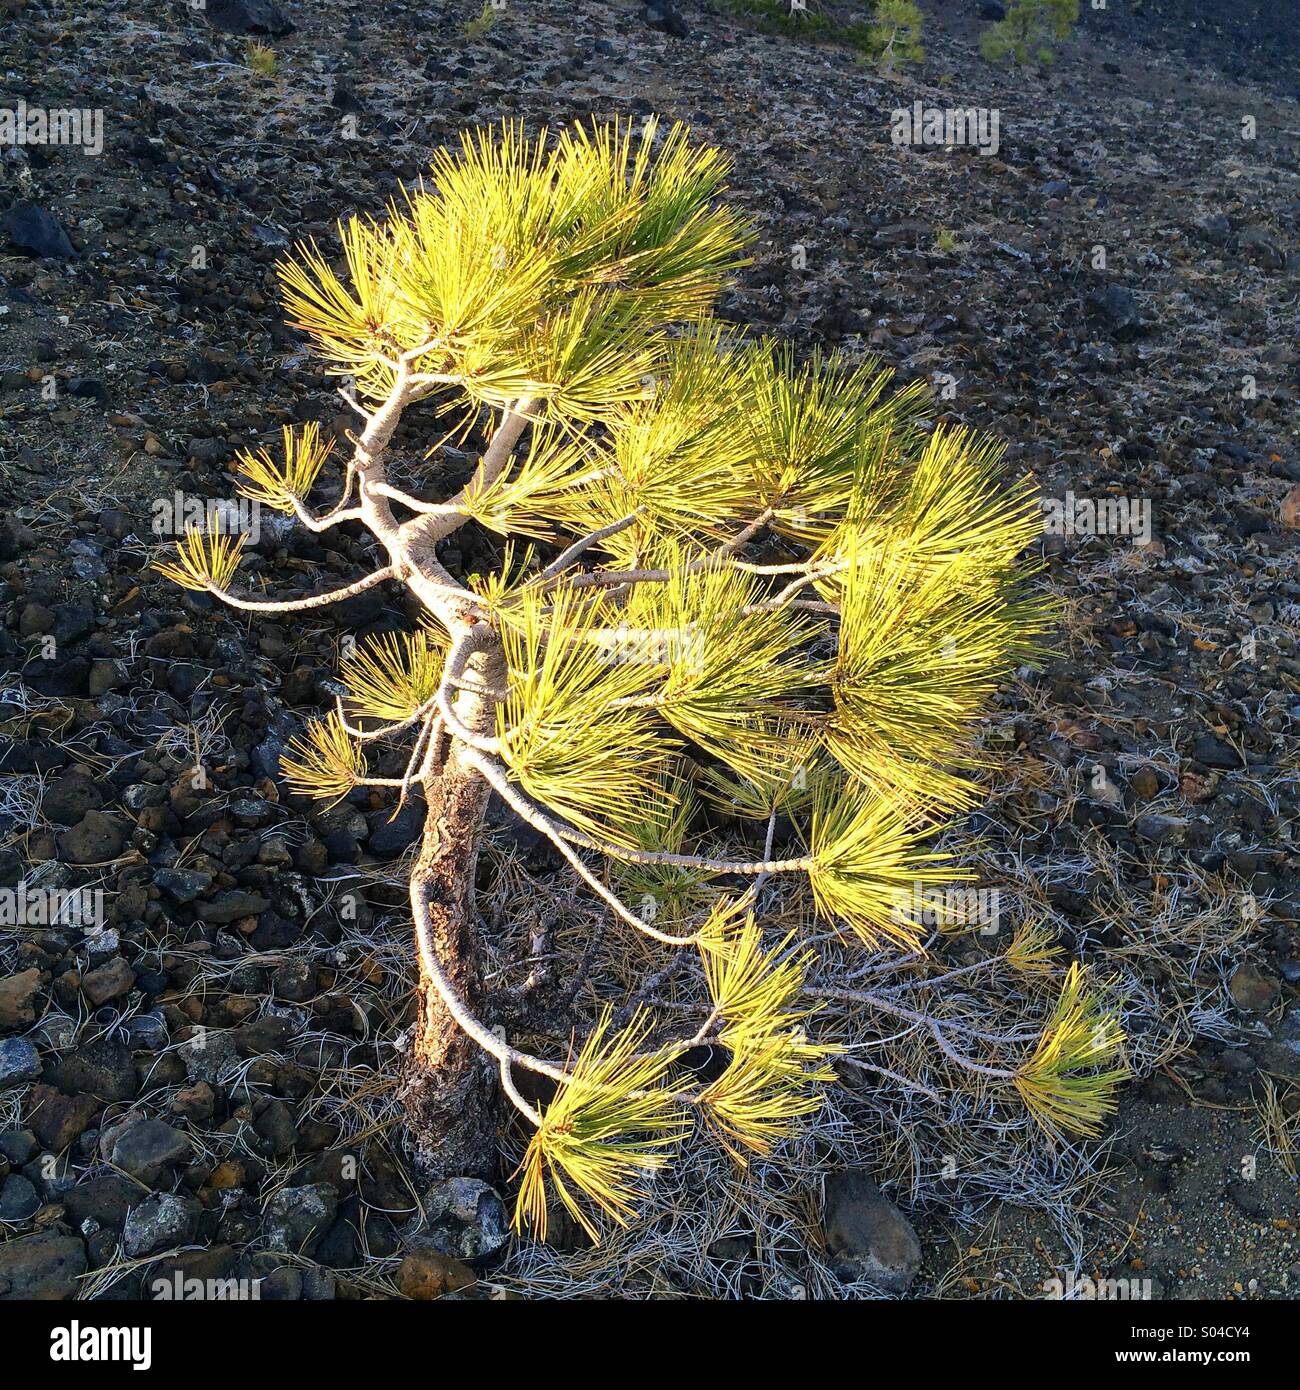 Le pin ponderosa, plantule, cône de cendres volcaniques Lassen, National Park, Californie Banque D'Images